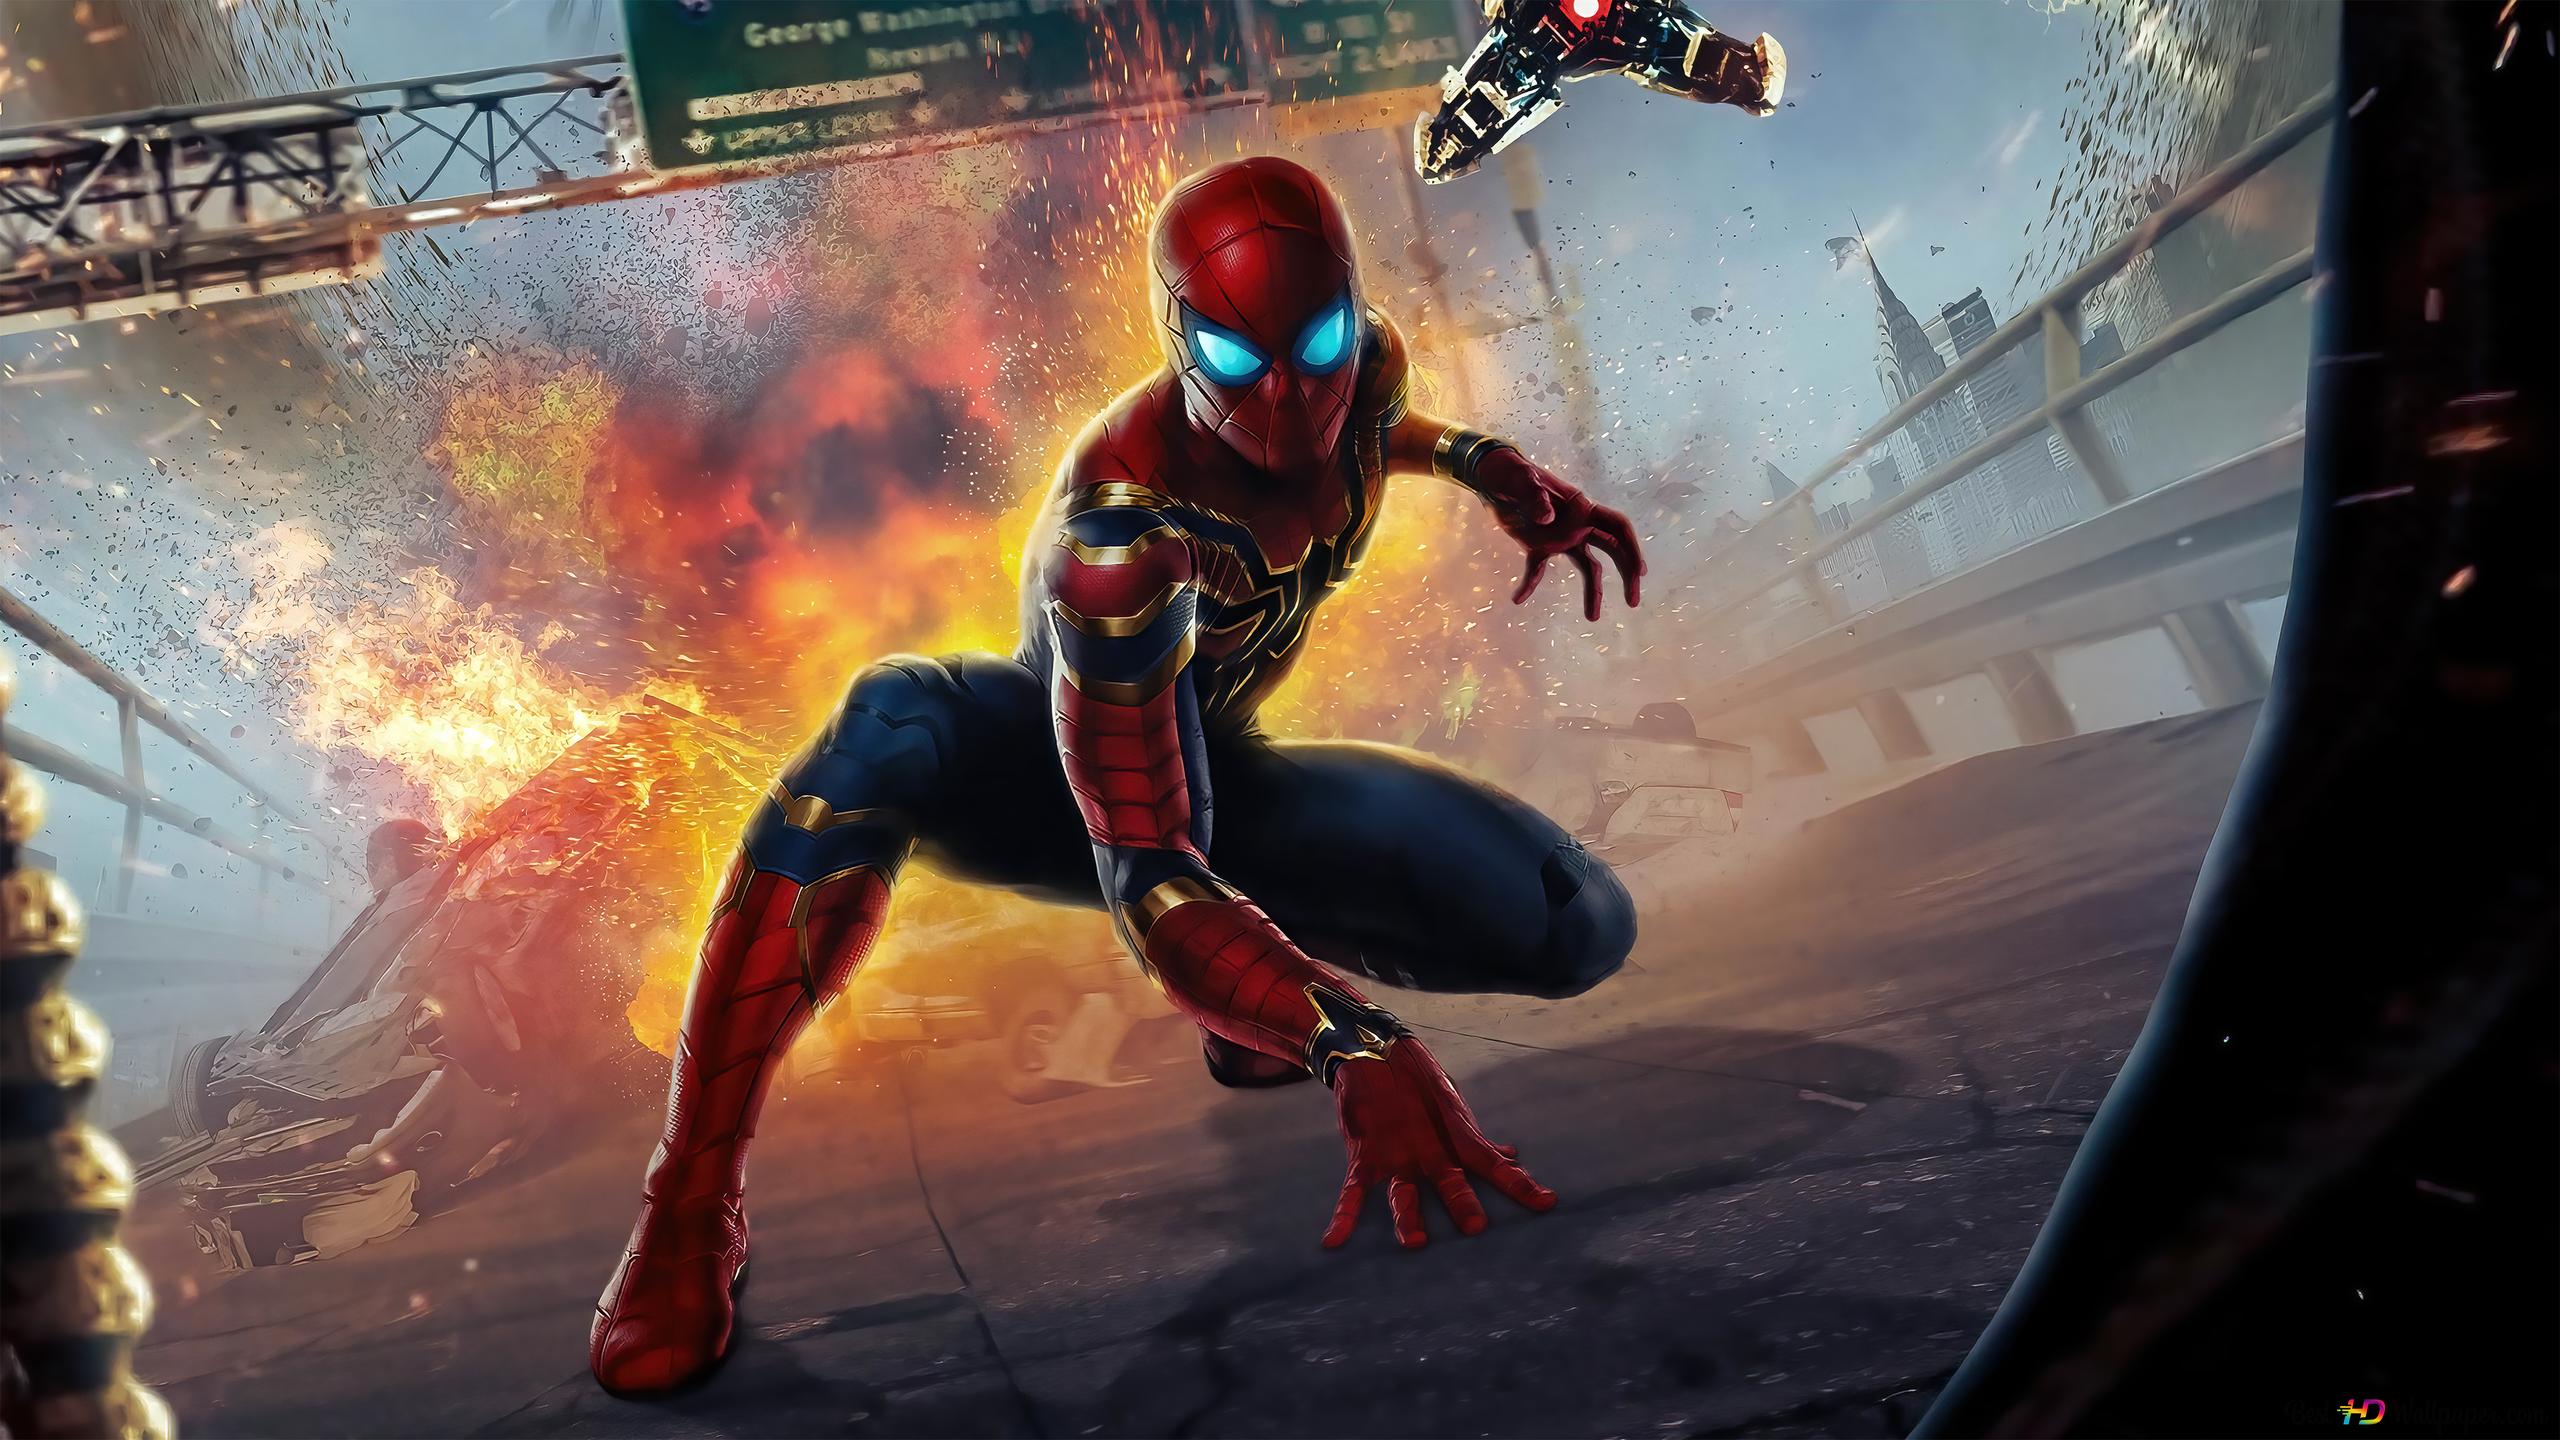 Iron spider man and blast behind him k wallpaper download